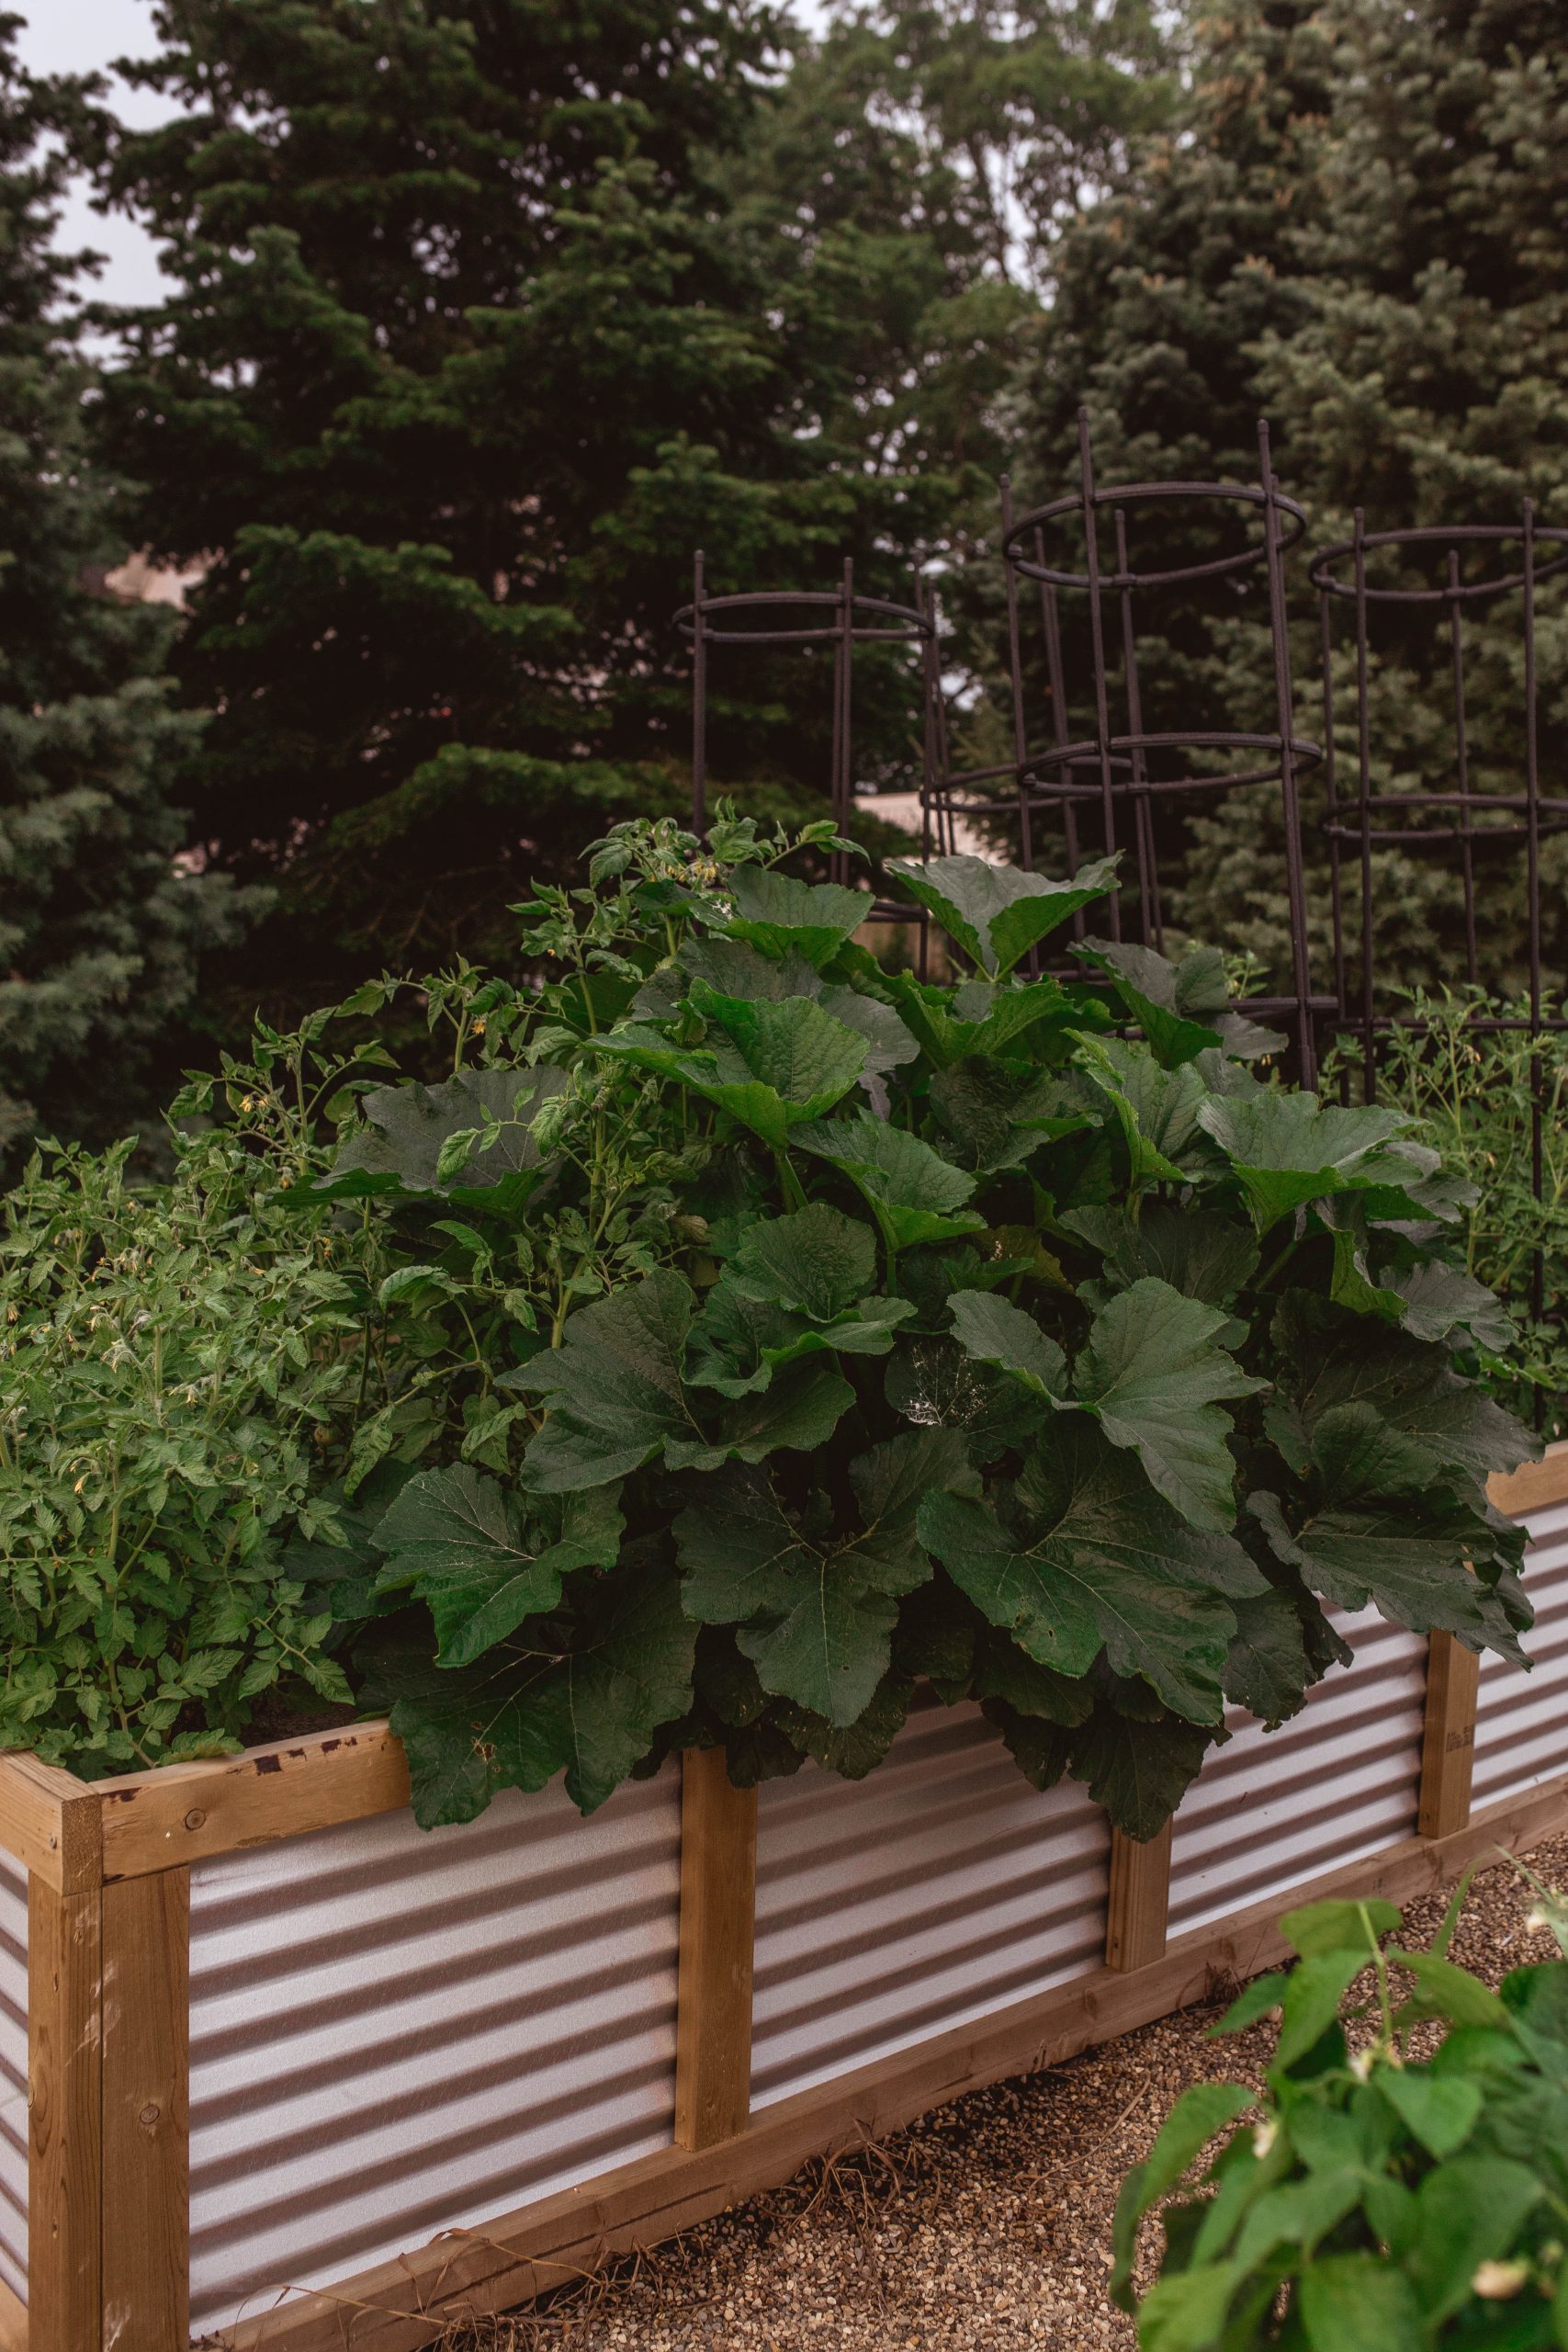 Growing Vegetables in Raised Garden Beds